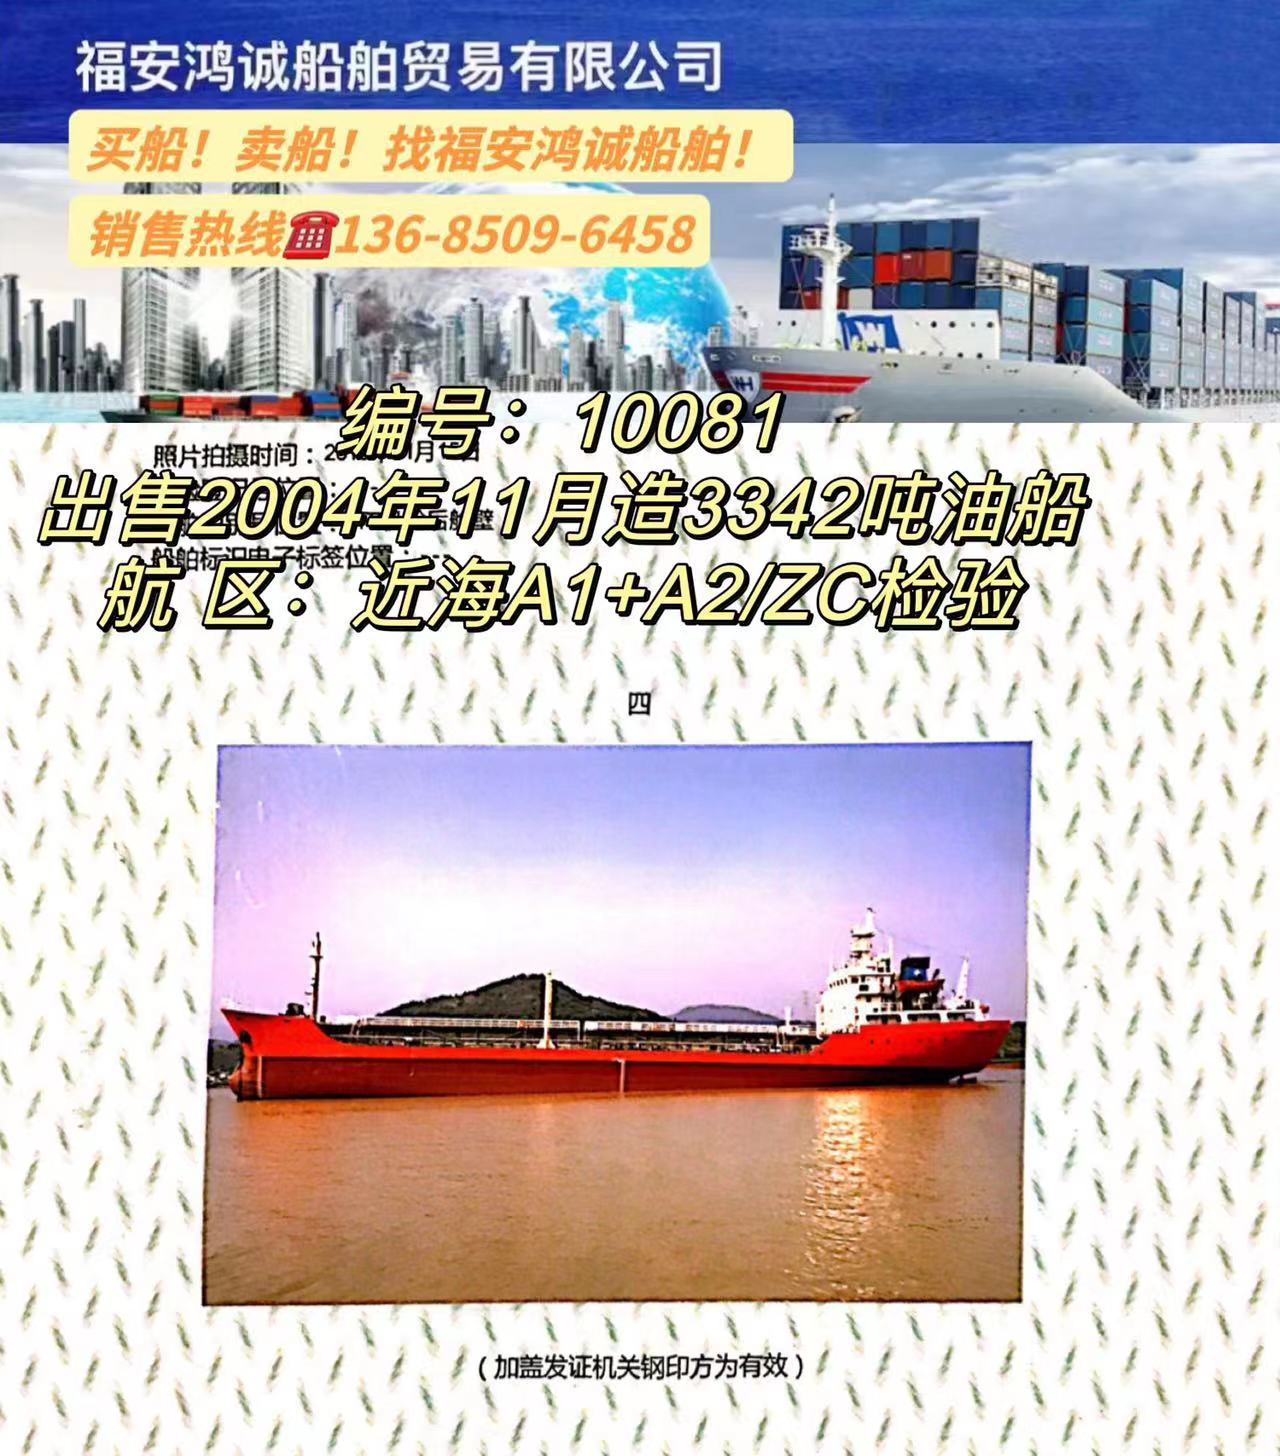 出售3342吨油船2004年11月浙江温州建造